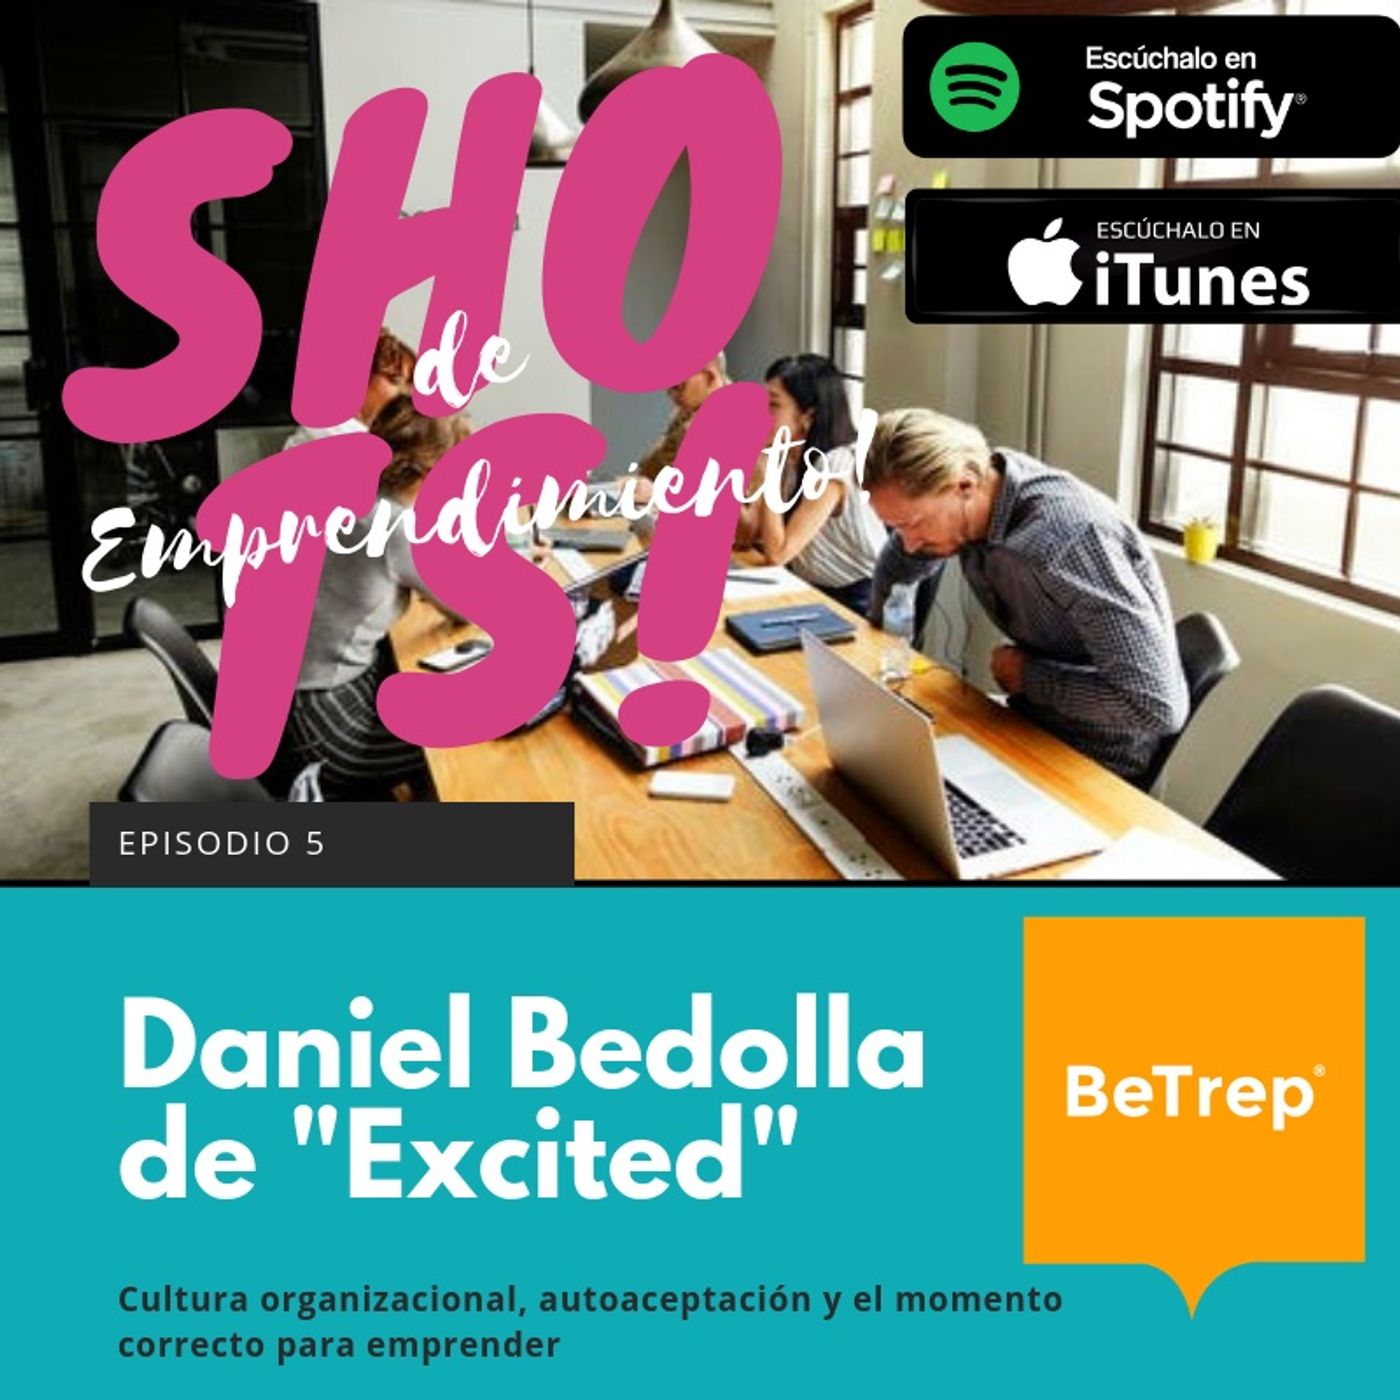 Ep. 5: Daniel Bedolla de "Excited"; Cultura organizacional, autoaceptación y el momento correcto para emprender